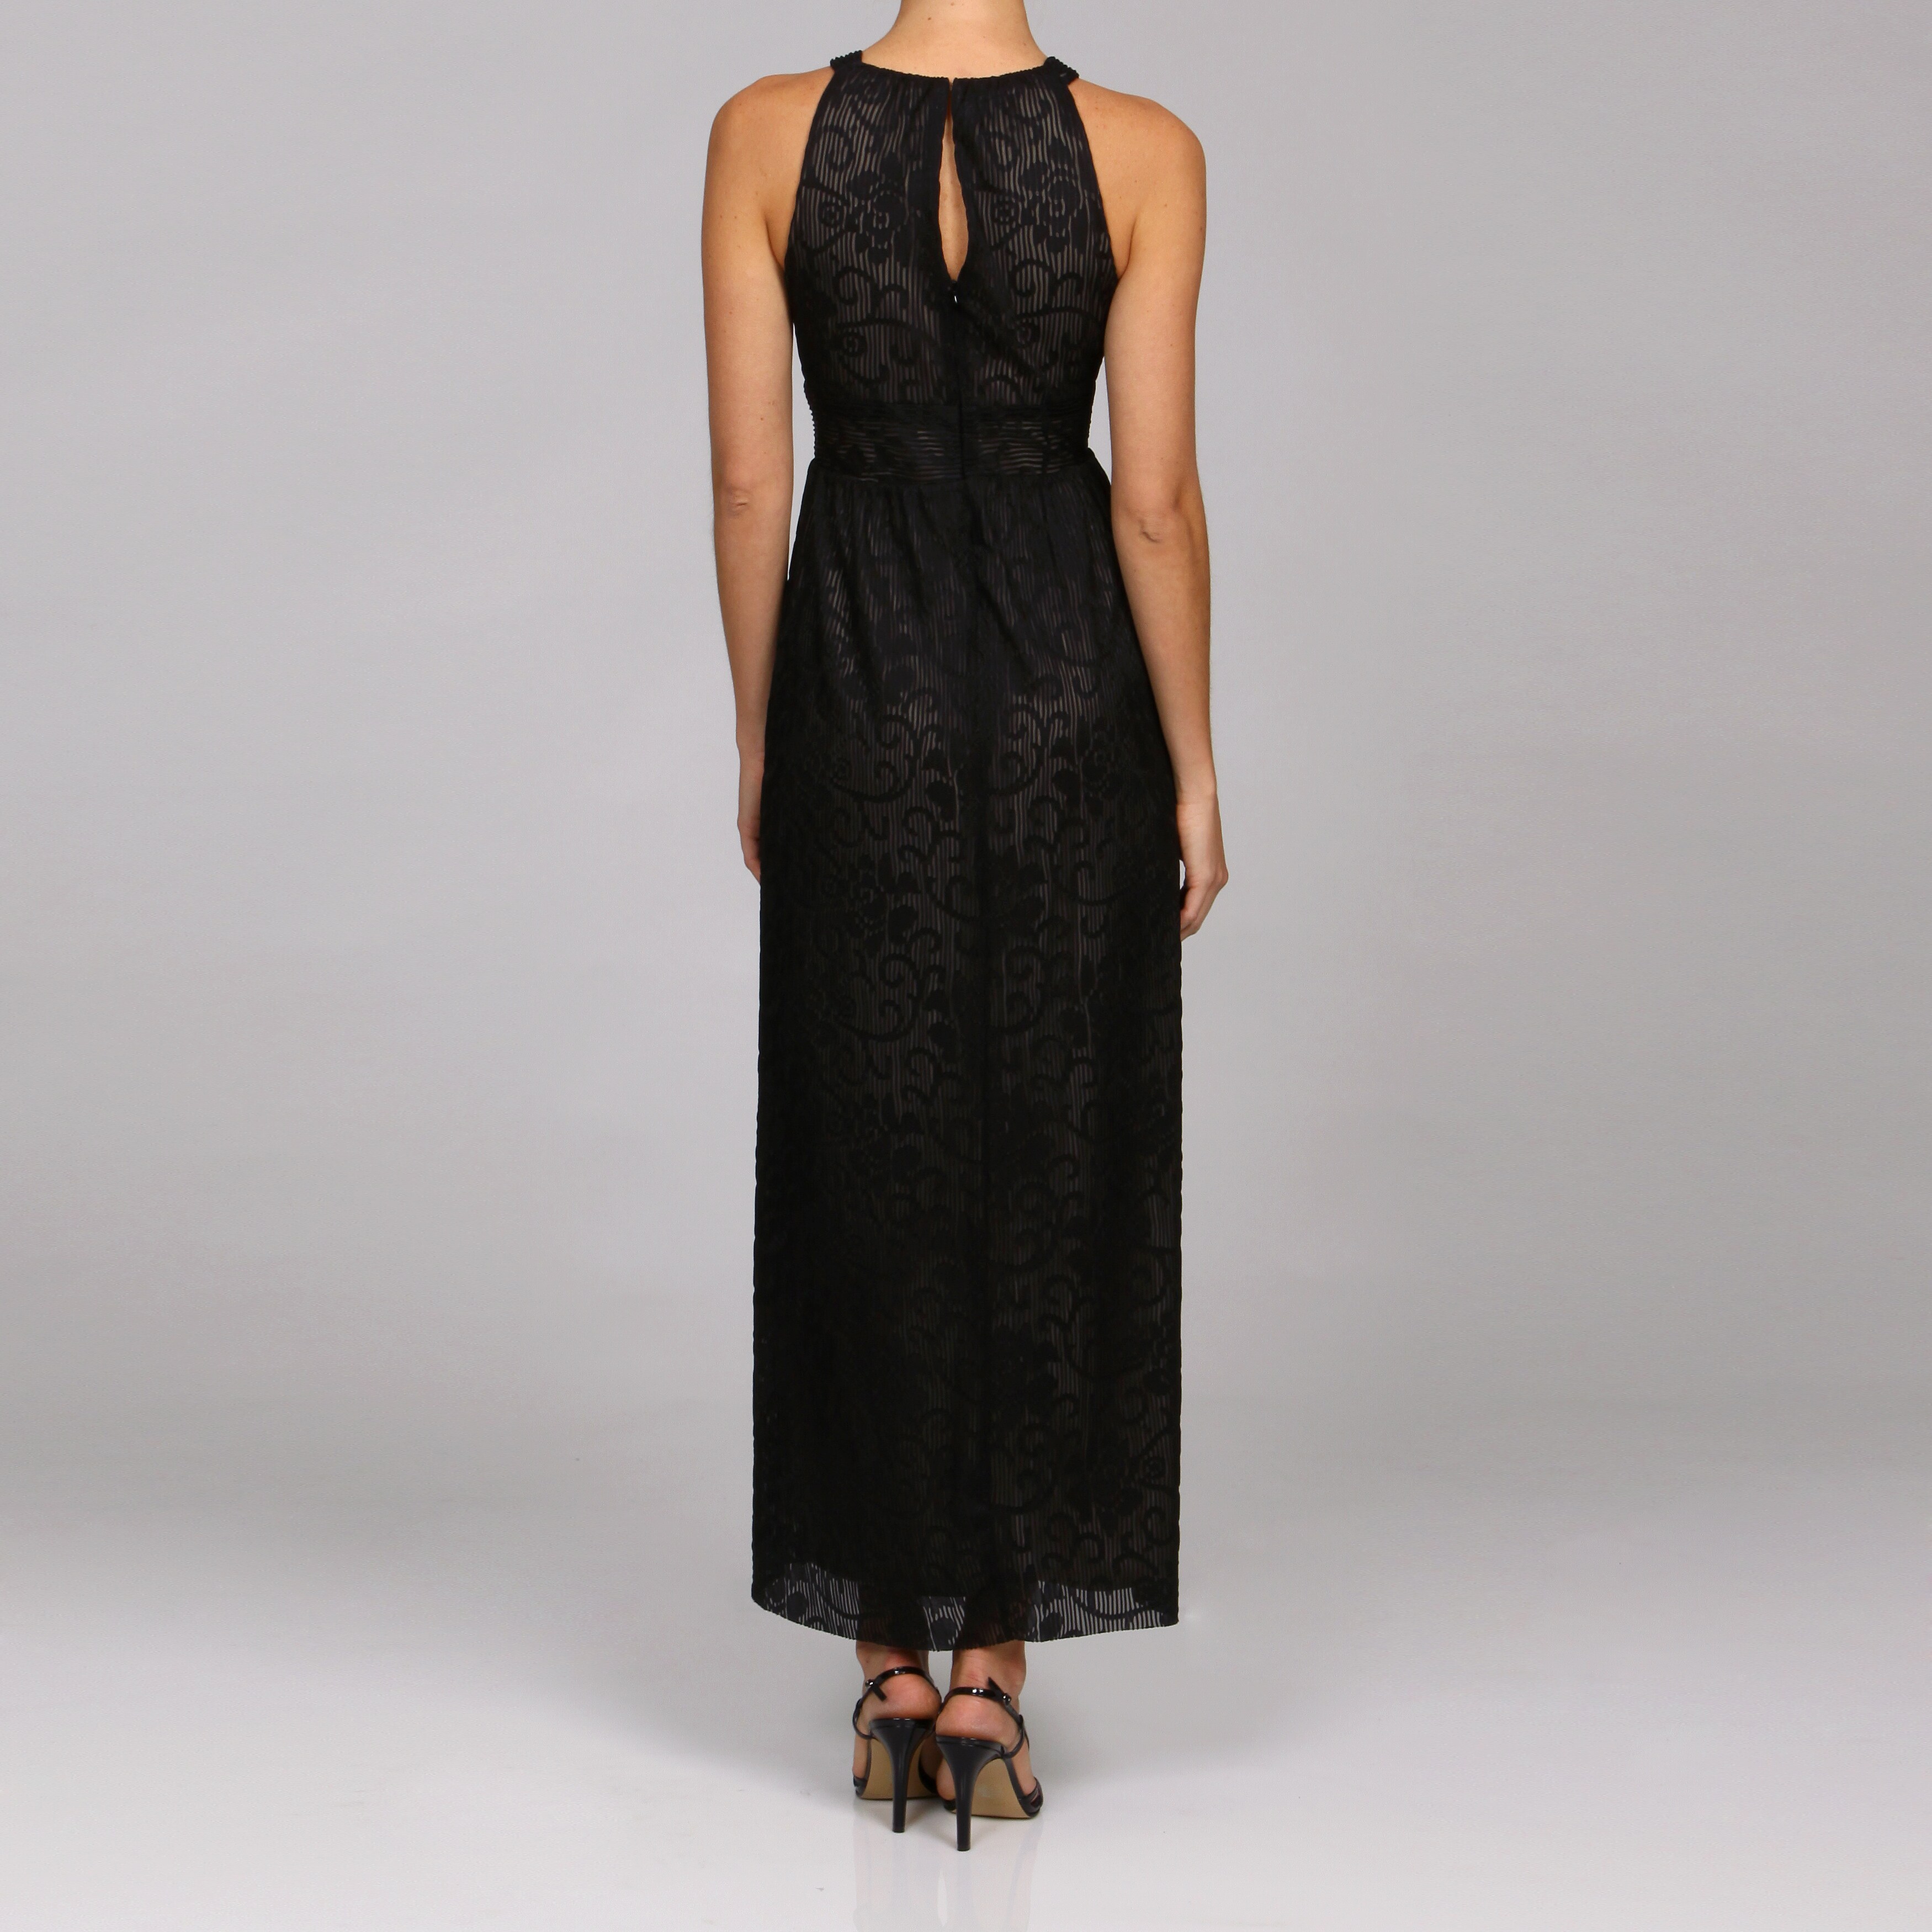 Soho Apparel Women's Stretch Lace Maxi Dress - 12960247 - Overstock.com ...